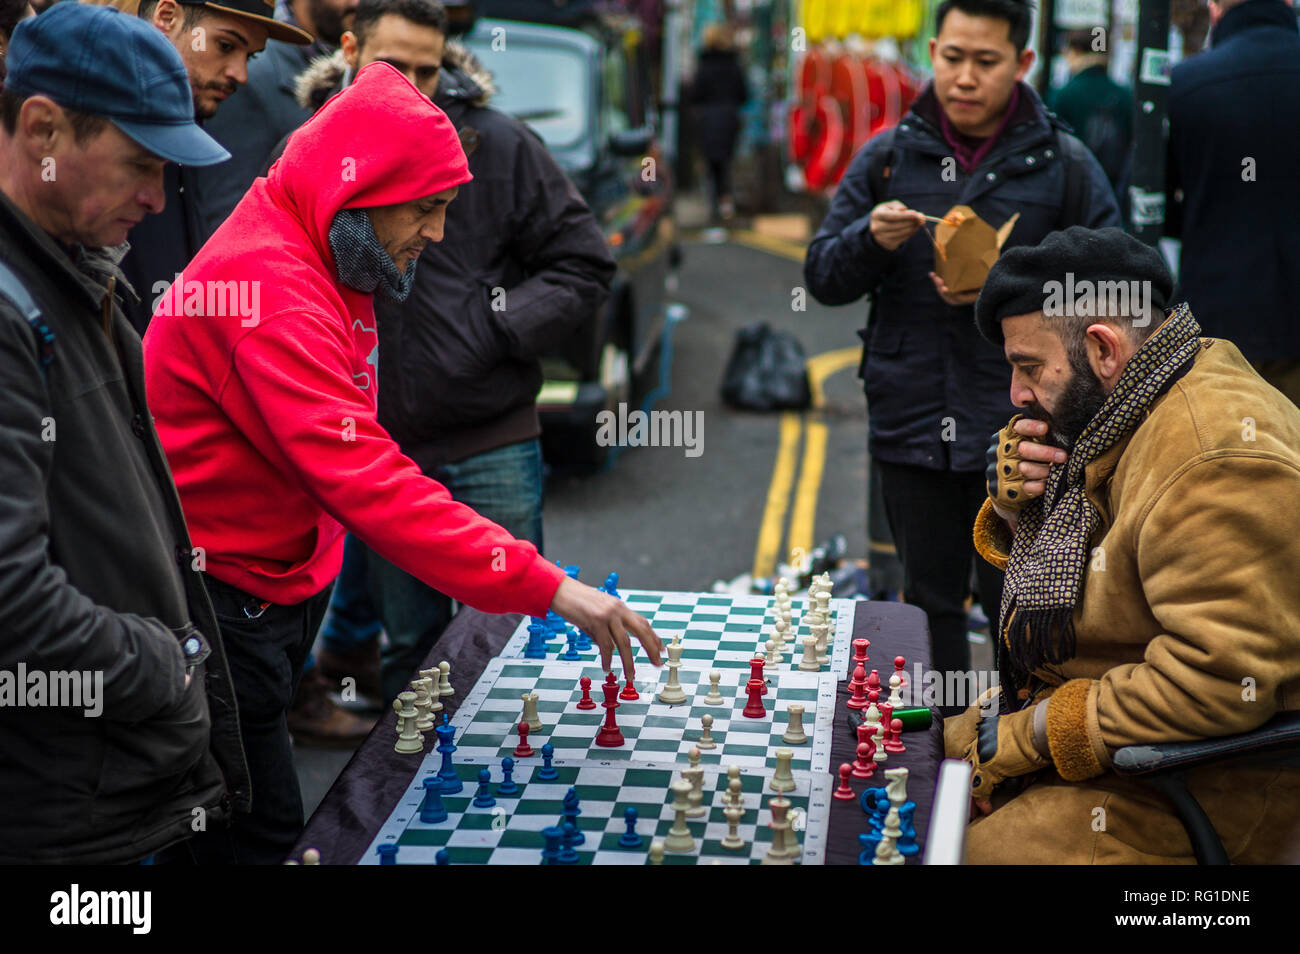 Échecs de Brick Lane Street - un joueur d'échecs joue jusqu'à 4 matches simultanés avec les touristes et les passants dans le marché populaire de Brick Lane Sunday à Londres Banque D'Images